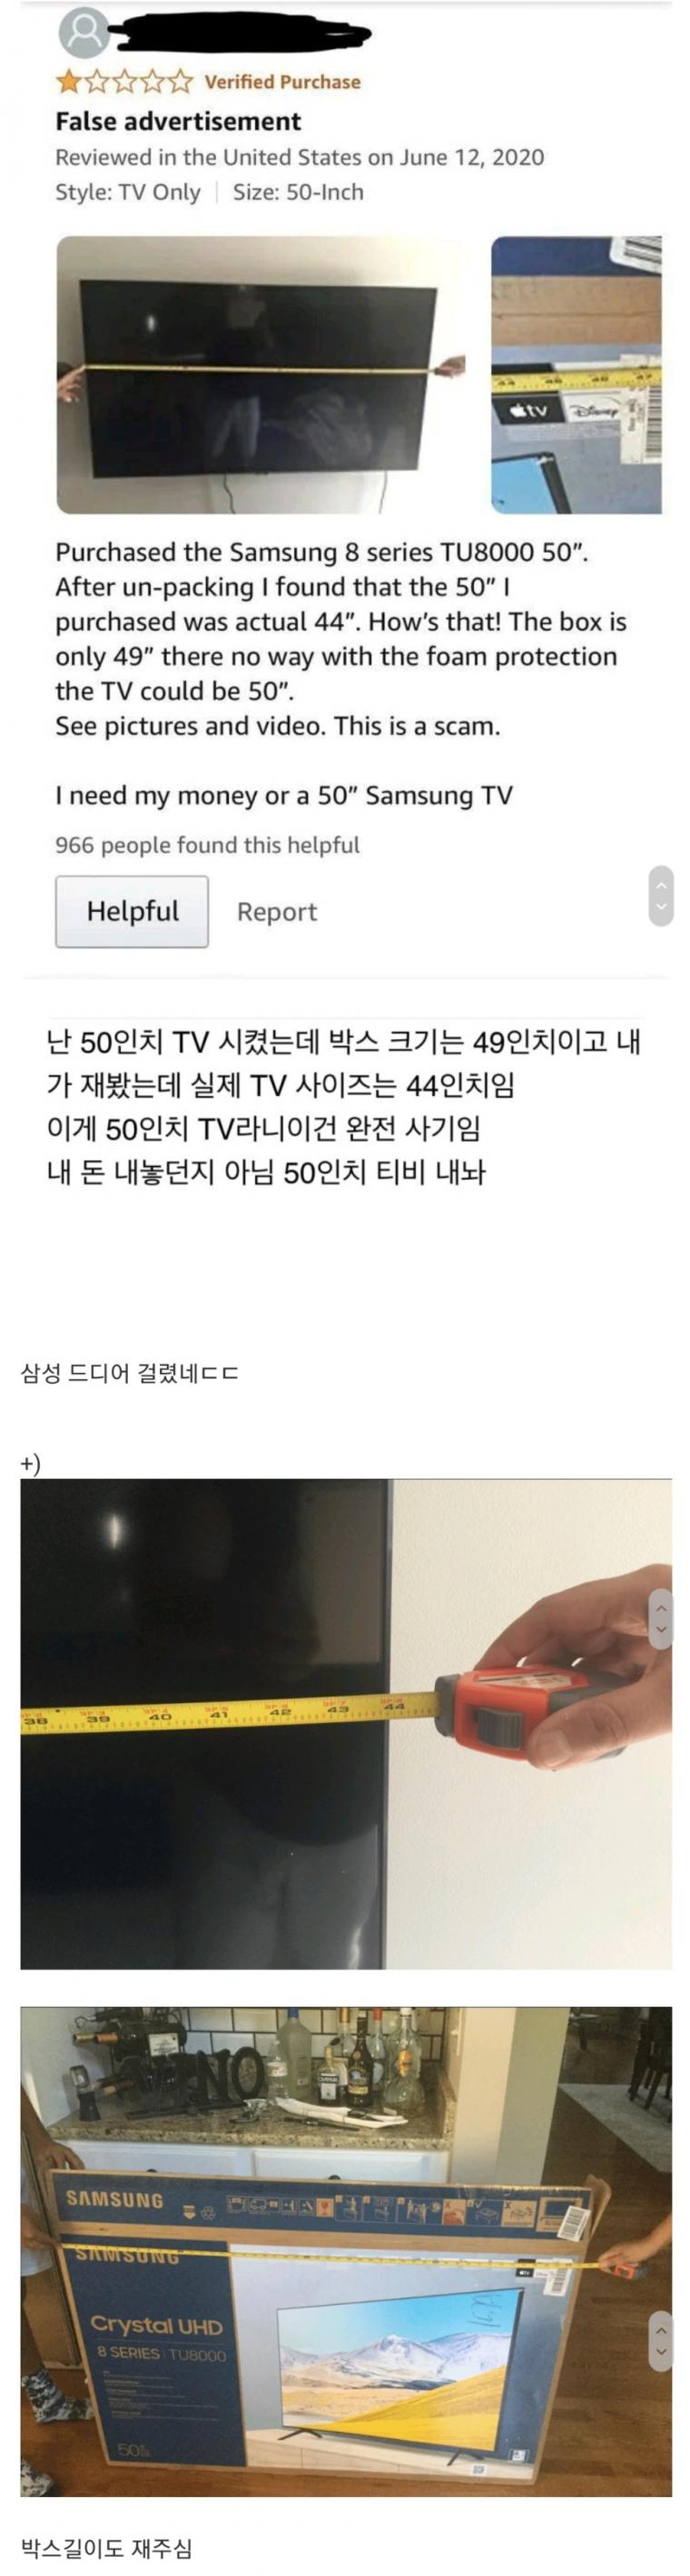 삼성 외국에서 50인치 TV 논란